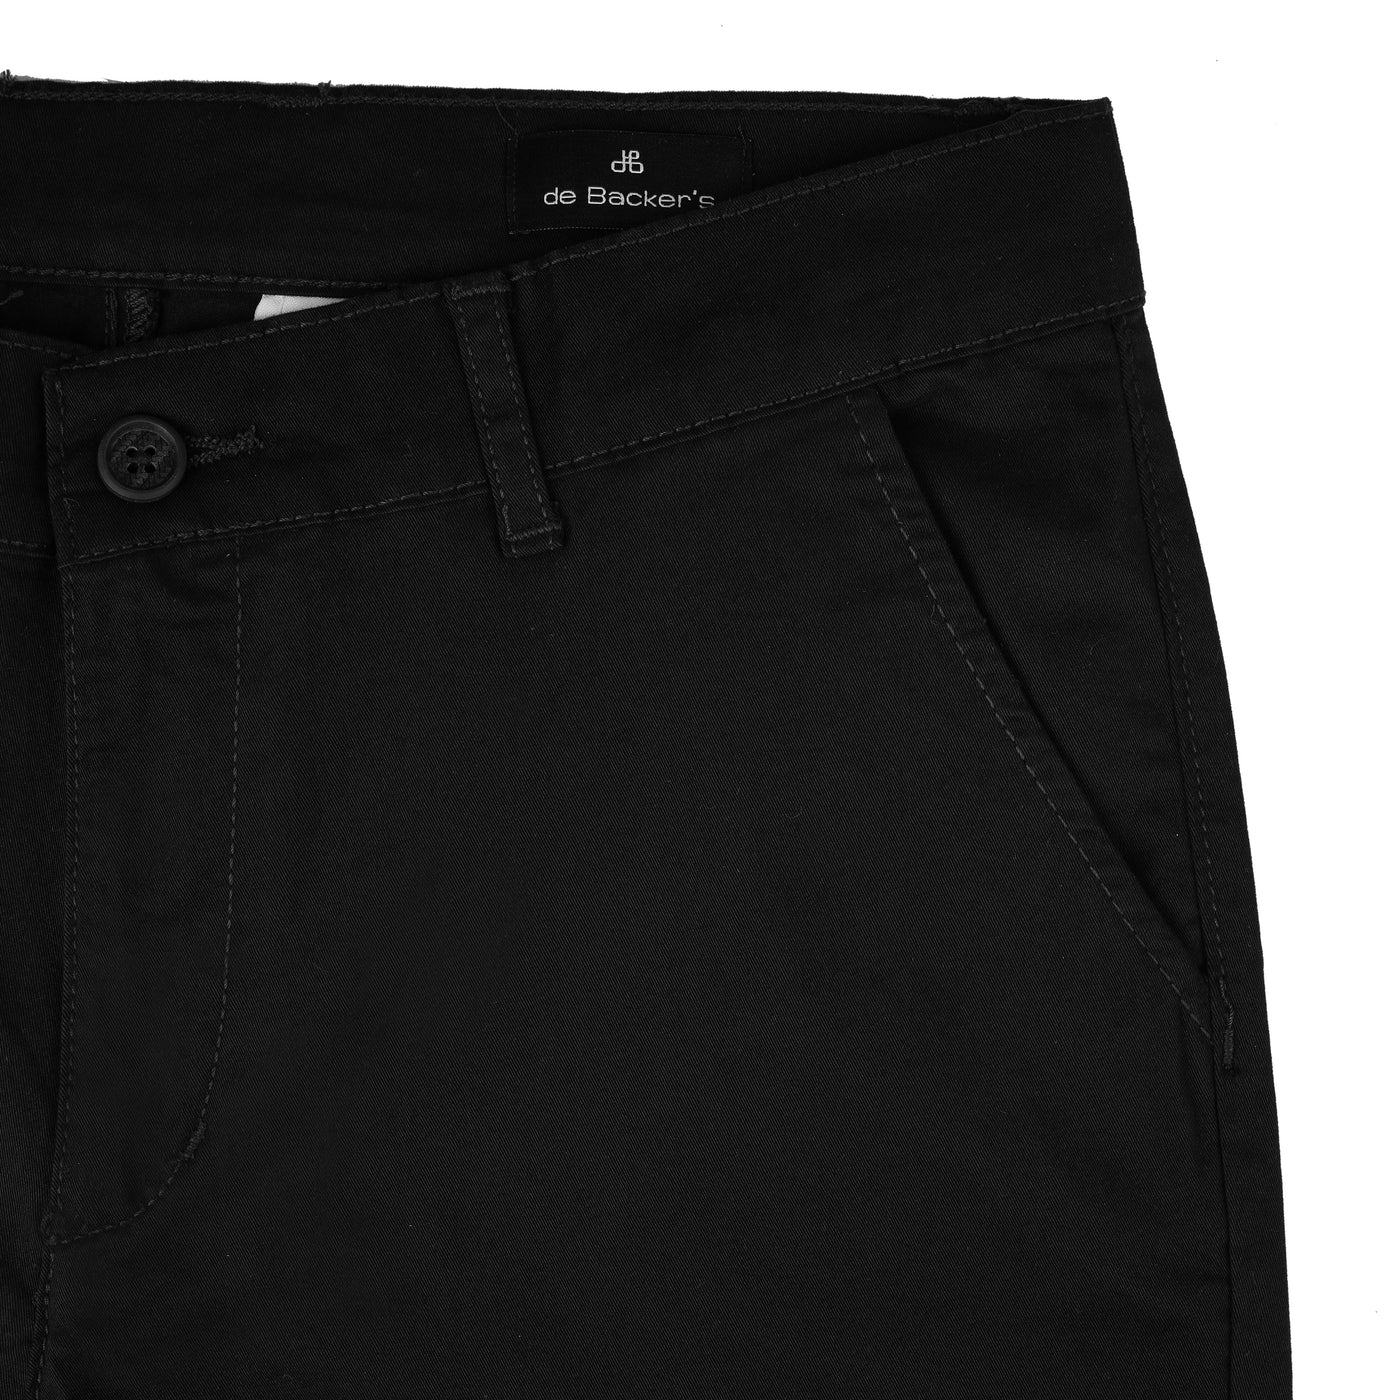 Chino Slim Black Cotton Elastic Pant